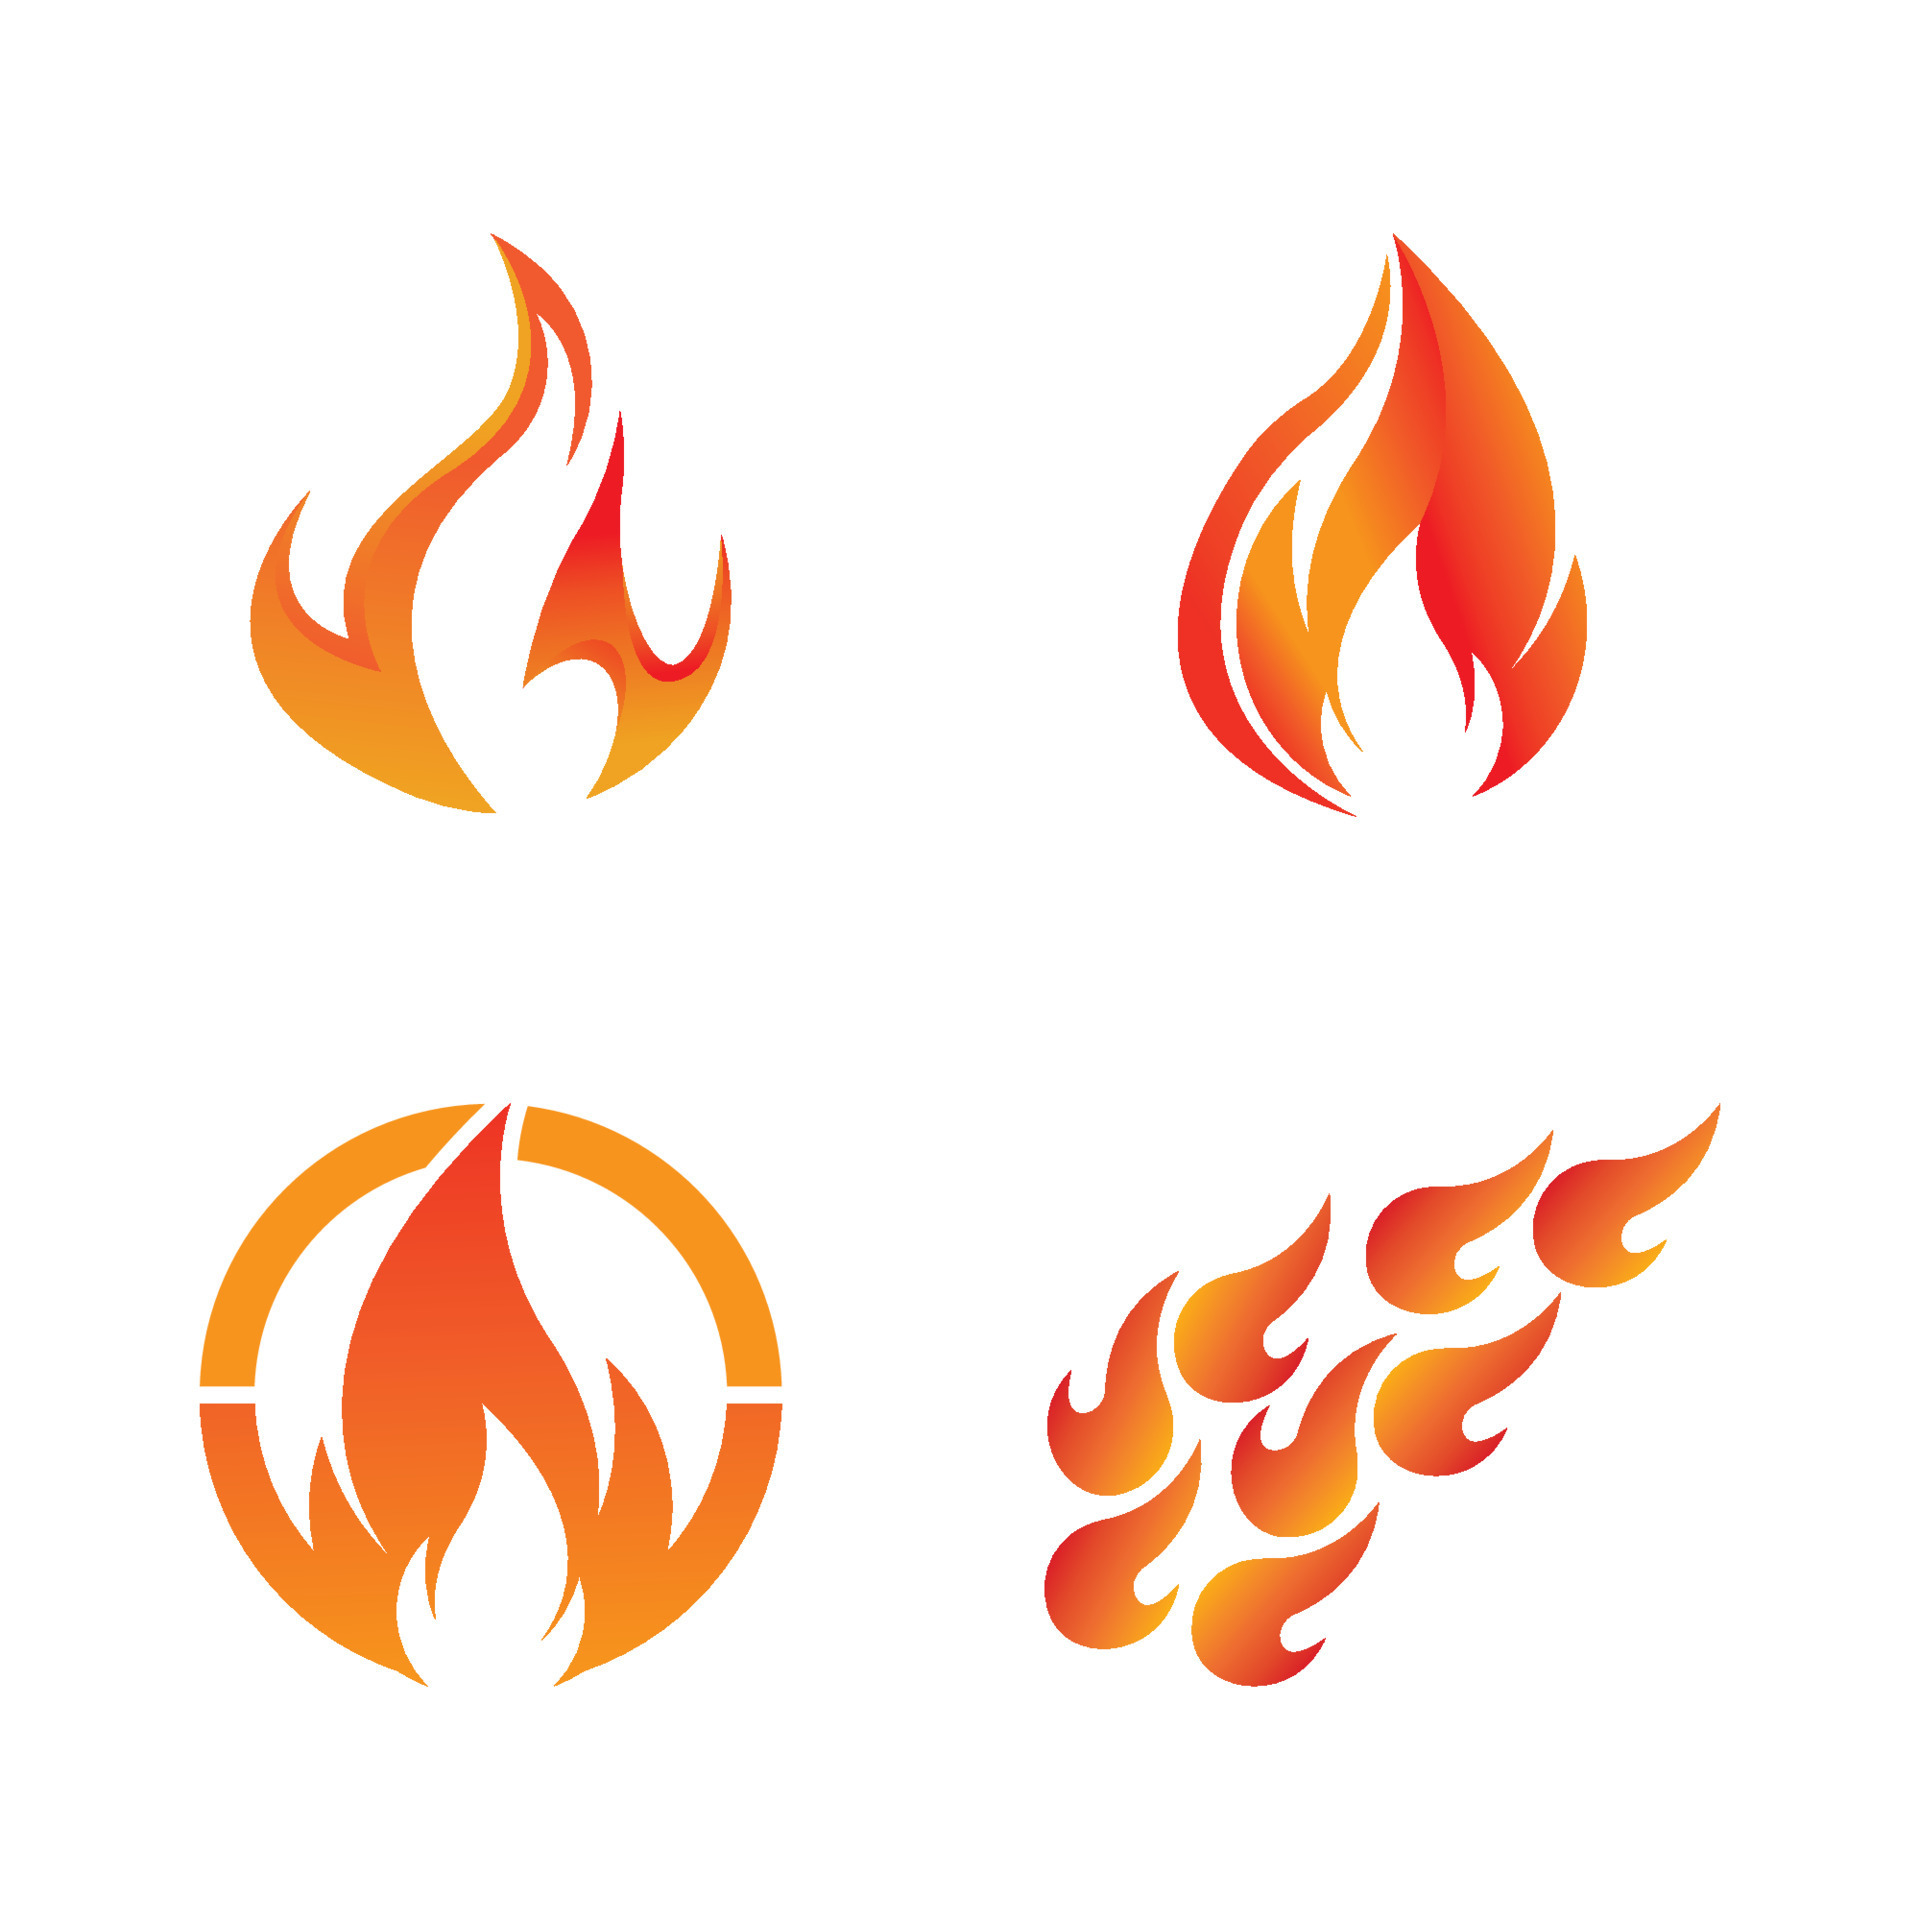 ilustração do logotipo de fogo ai download grátis vetor de logotipo de fogo  grátis - Urbanbrush